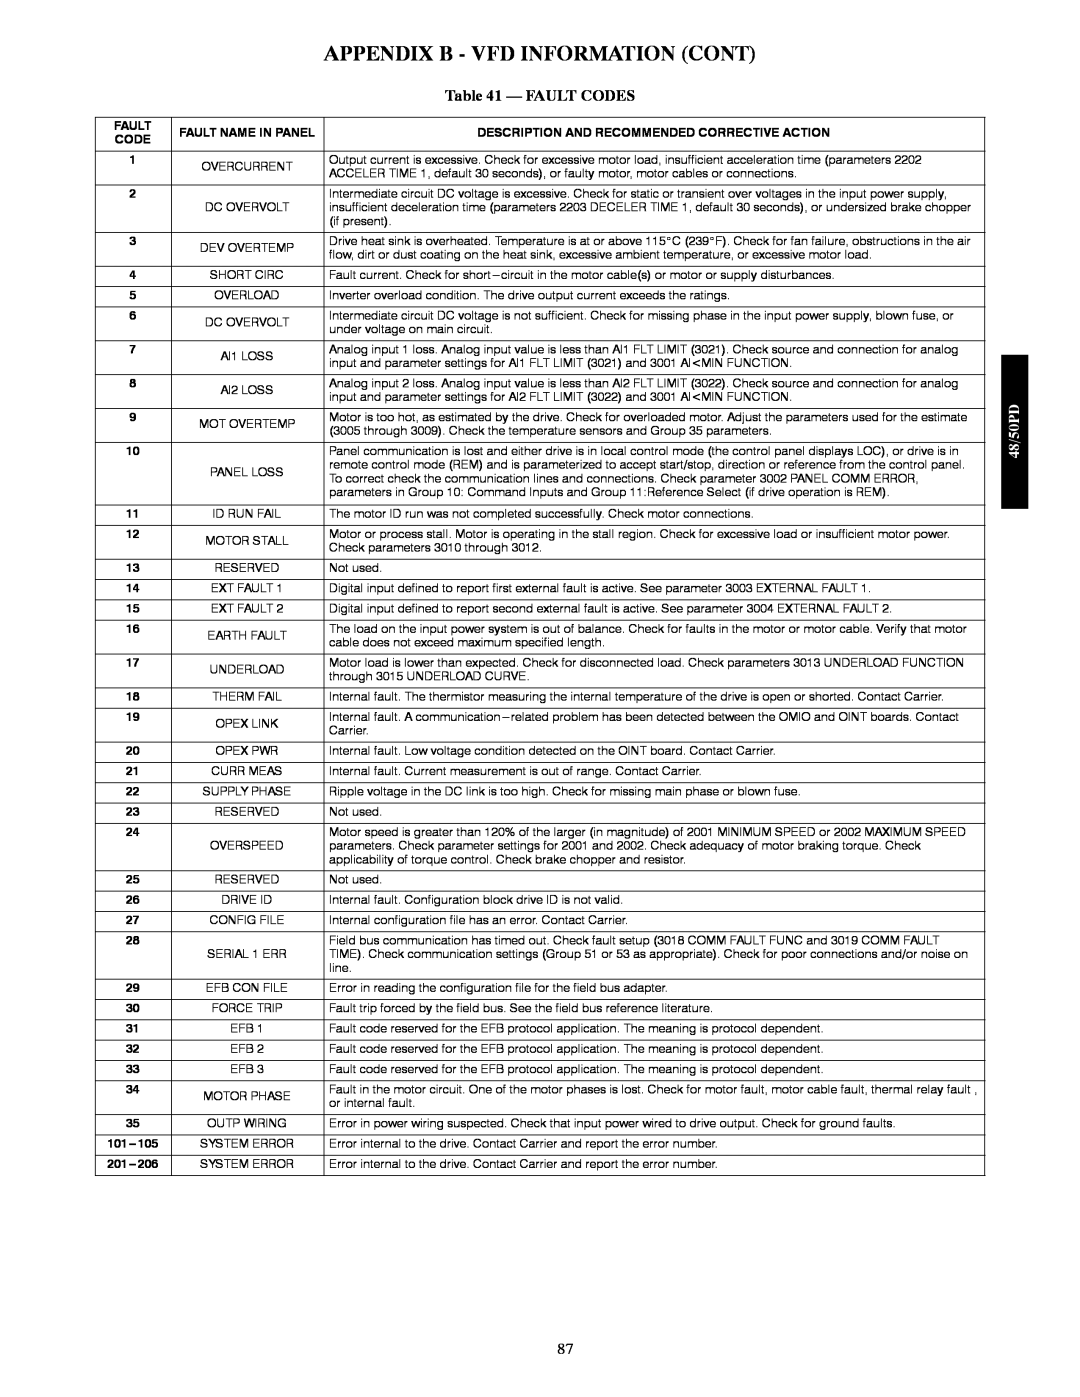 Carrier 48/50PD05 manual Appendix B - Vfd Information Cont, Fault Codes 